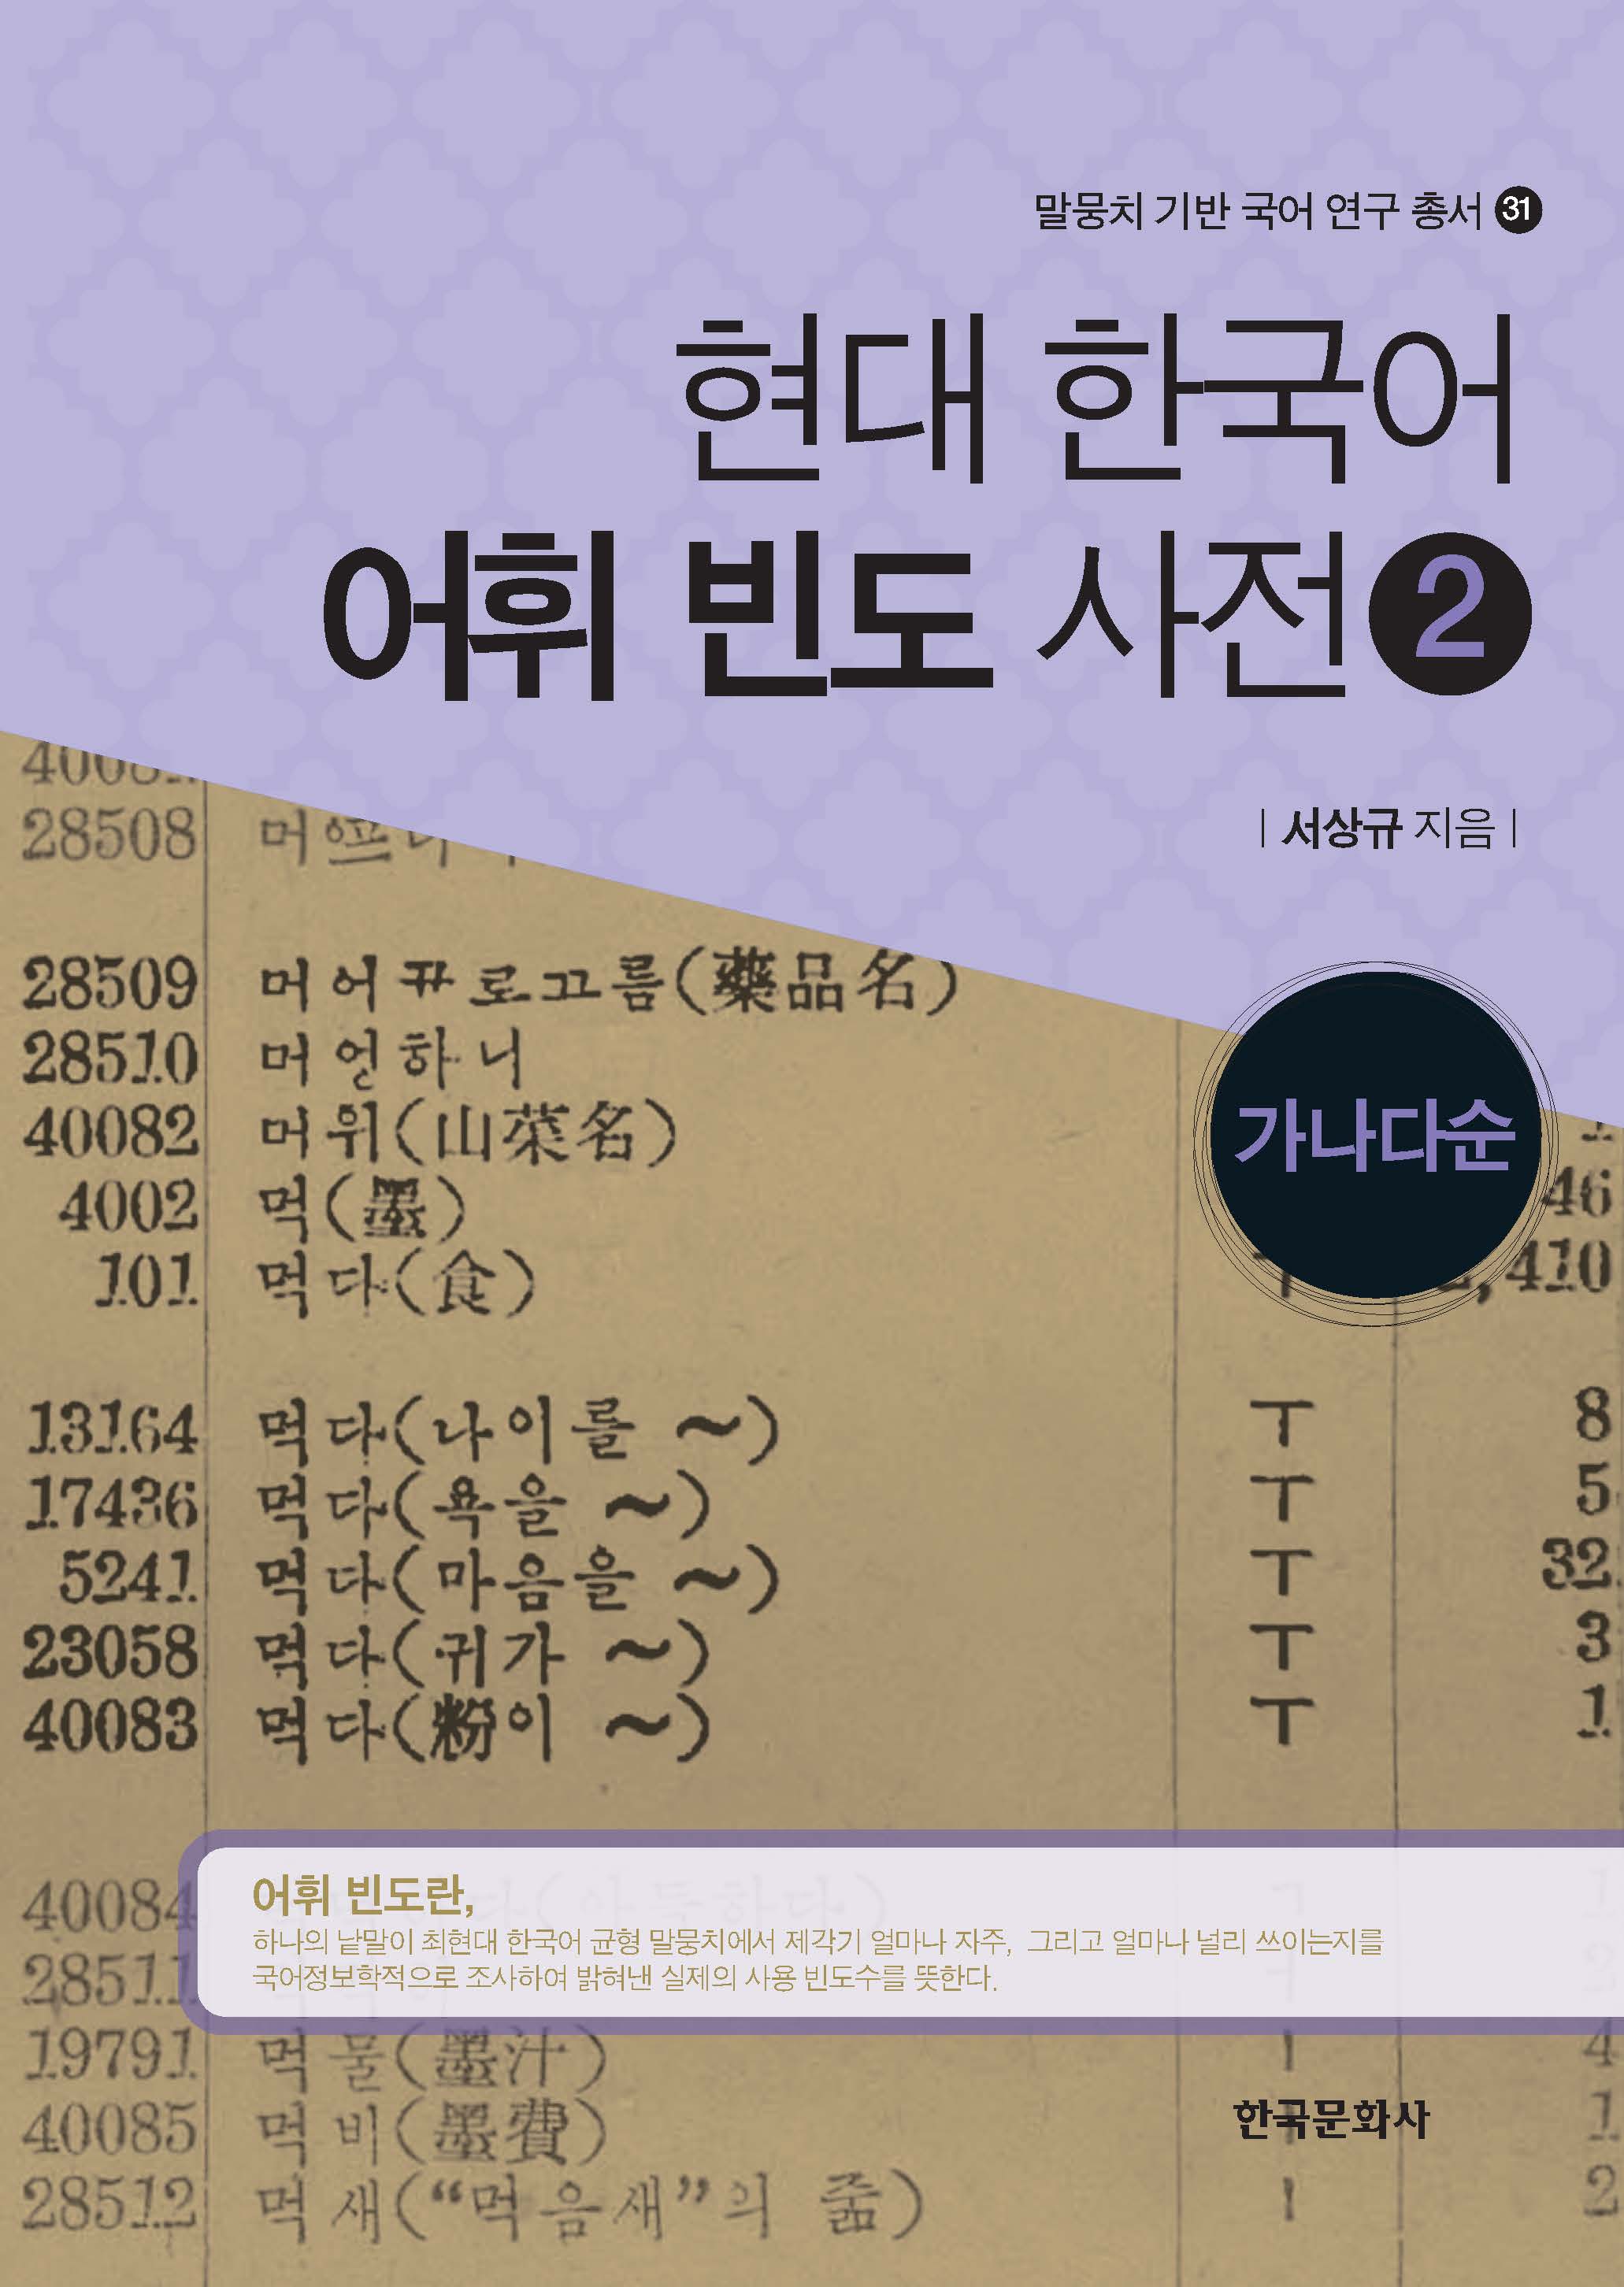 현대 한국어 어휘 빈도 사전 2-가나다순